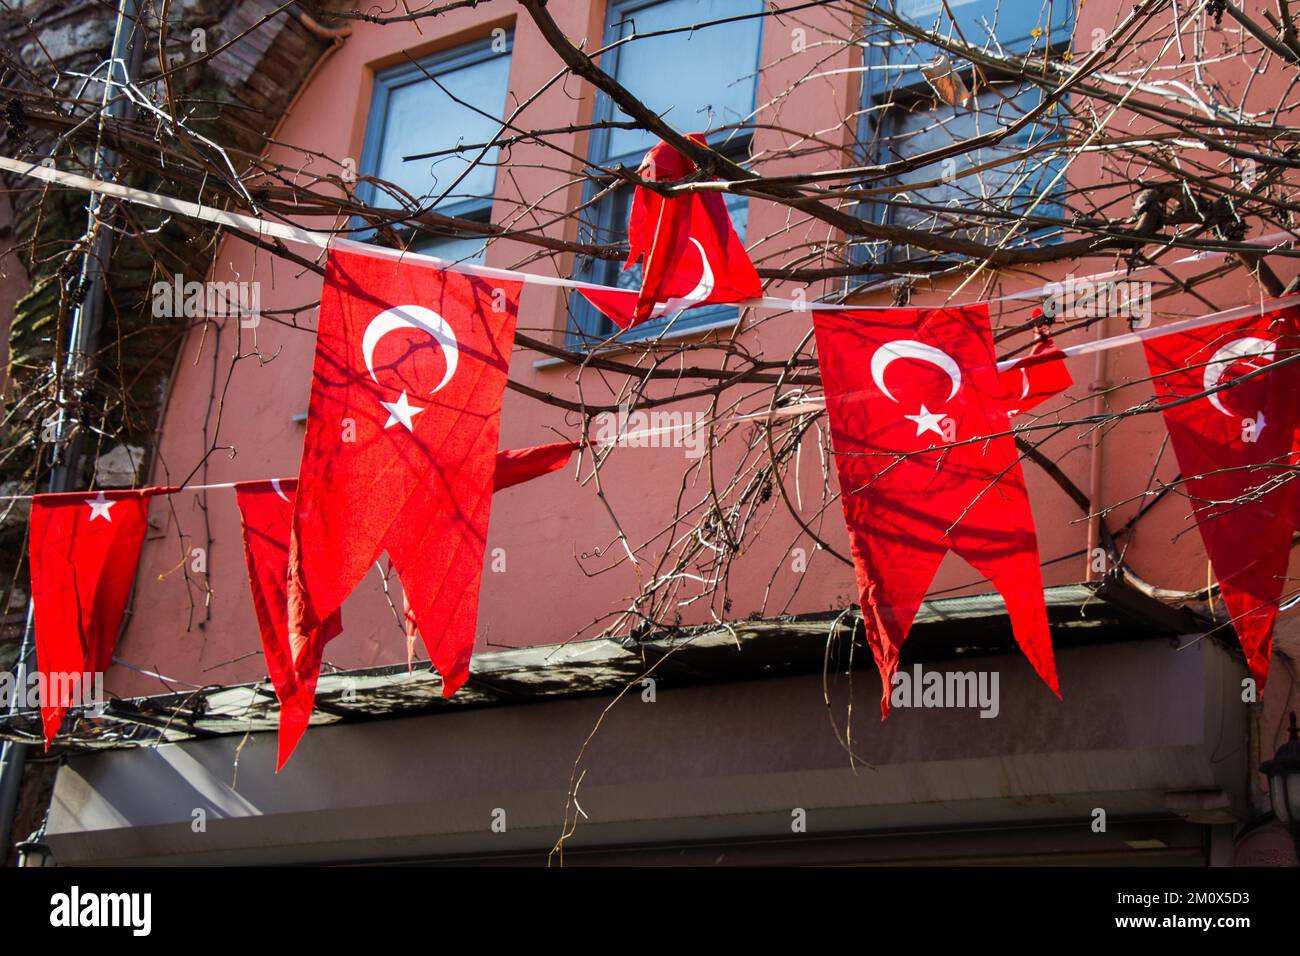 Drapeau national turc accroché dans la rue en plein air Banque D'Images